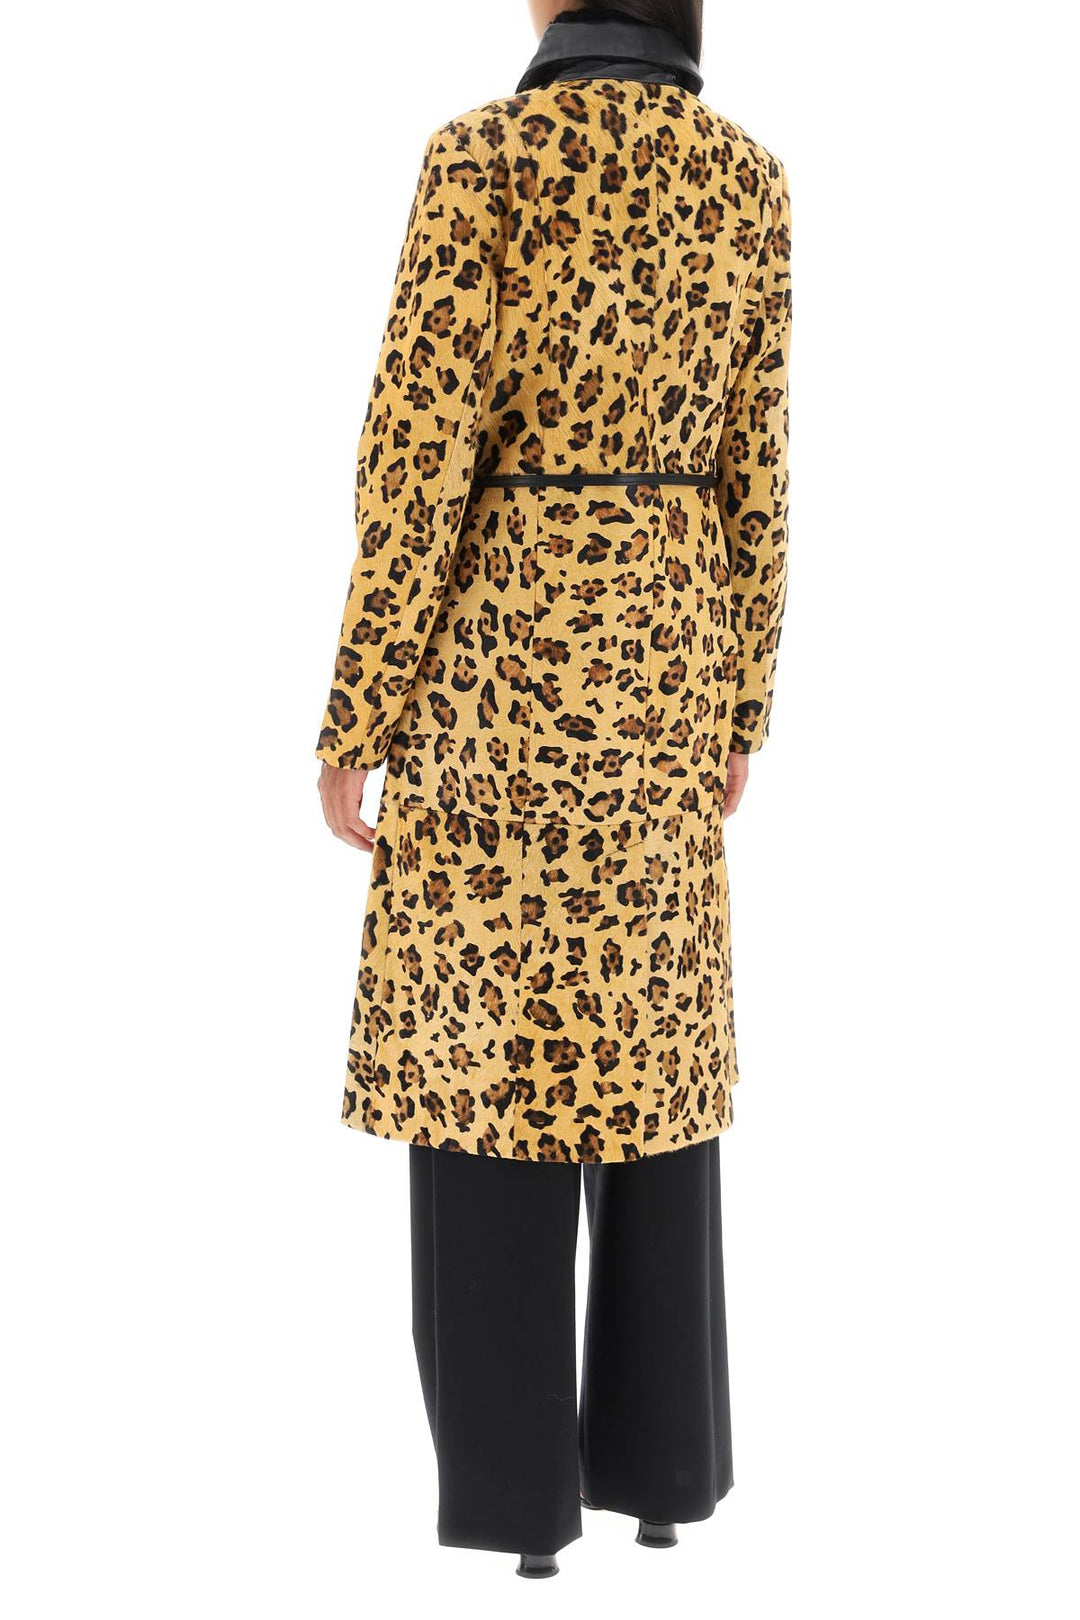 Saks Potts 'Ginger' Leopard Motif Ponyskin Coat   Beige